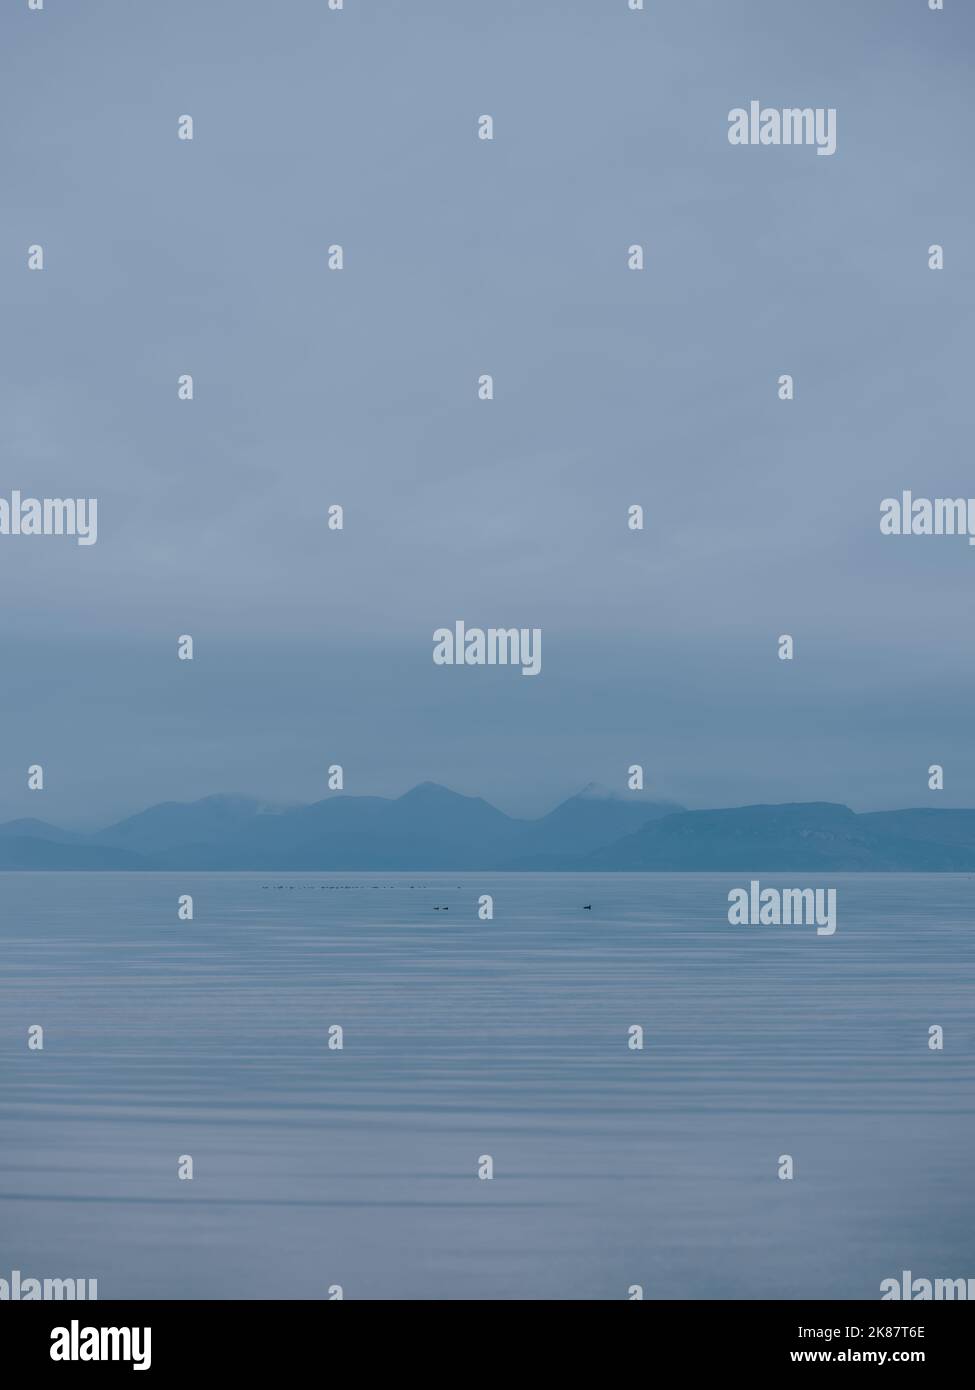 Île de Skye - bleu crépuscule minimal eau plate Scottish mer Island paysage dans les West Highlands, Ecosse Royaume-Uni - mer montagnes paysage marin Banque D'Images